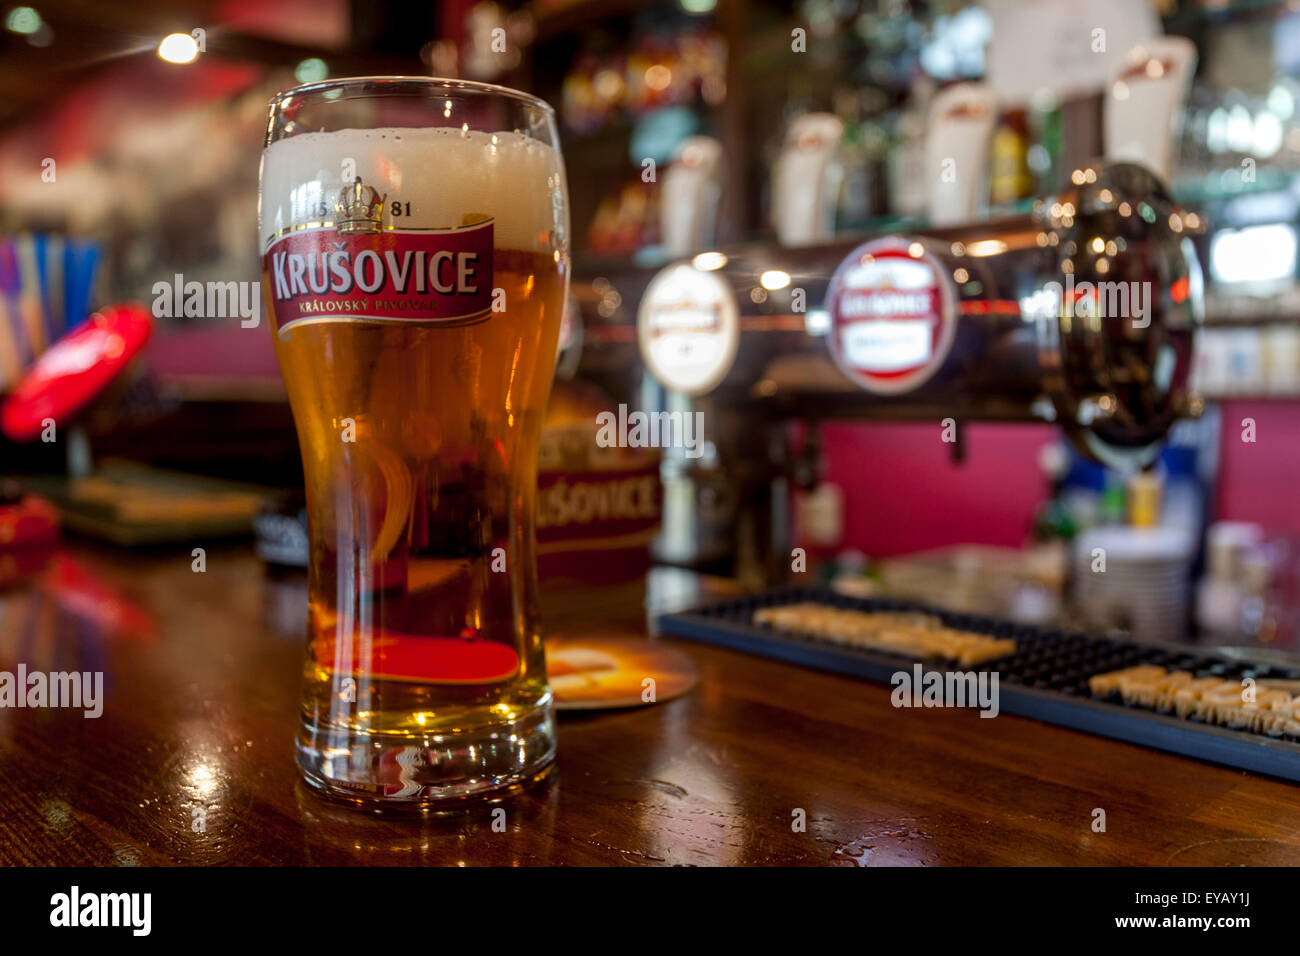 Krusovice bicchiere di birra nel bar di Praga all'interno della Repubblica ceca Foto Stock